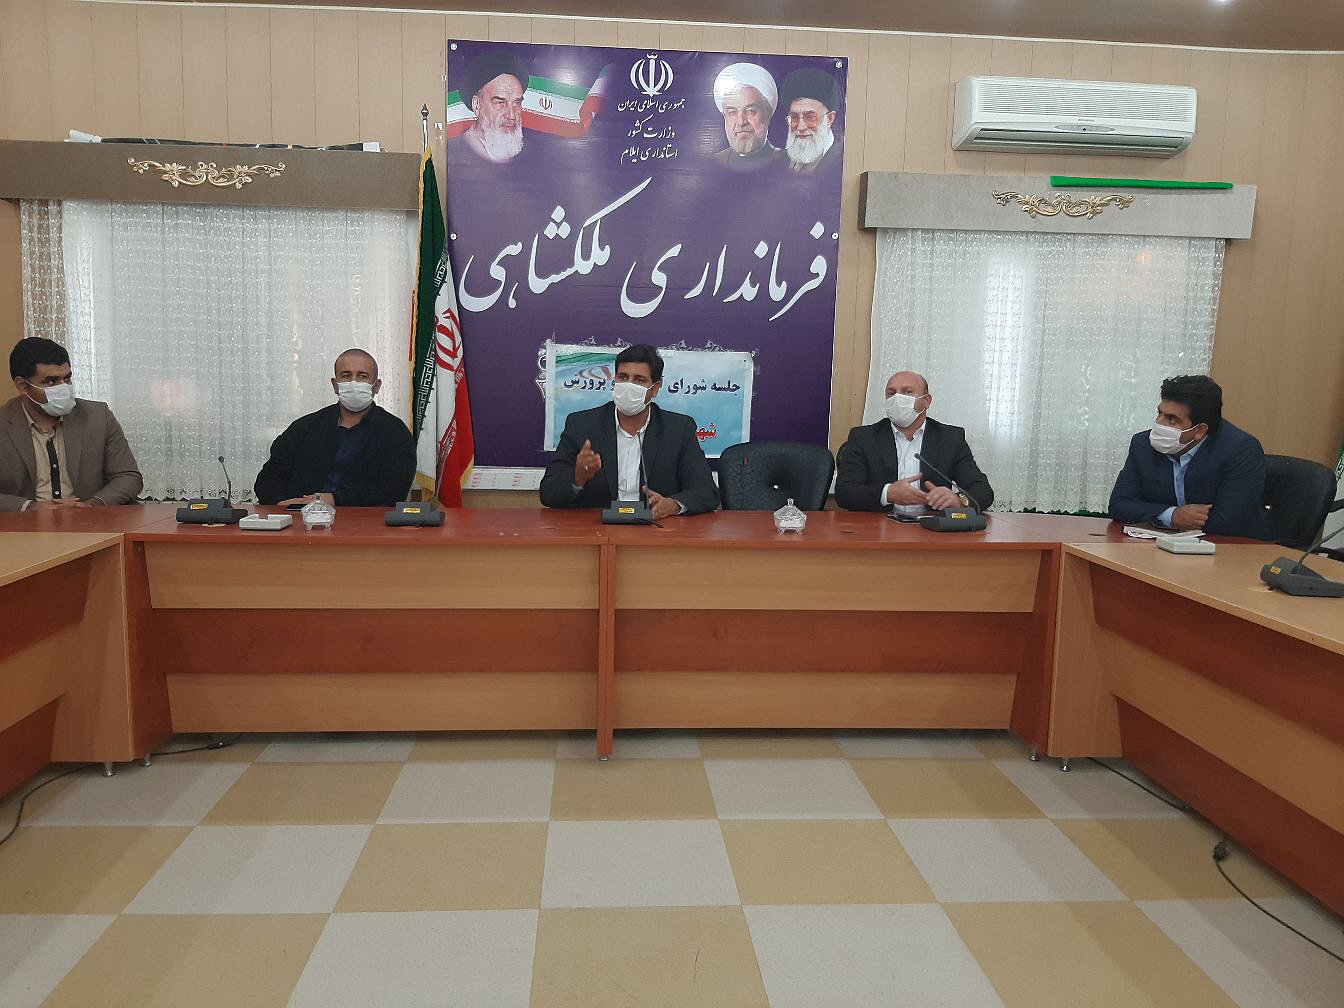 جلسه شورای آموزش و پرورش شهرستان ملکشاهی برگزار شد